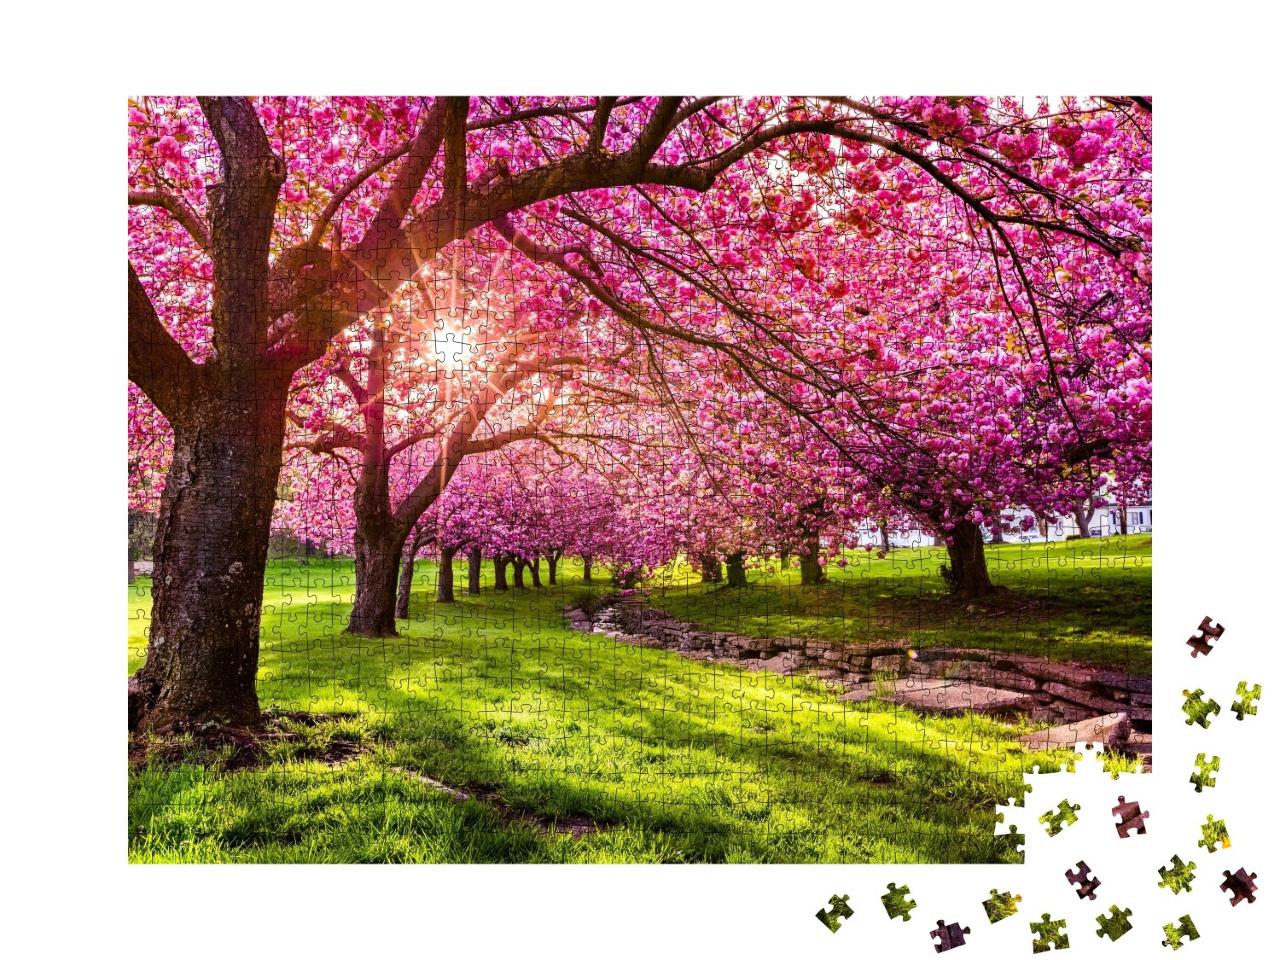 Puzzle de 1000 pièces « Cerisiers en fleurs à Hurd Park, Dover, New Jersey »